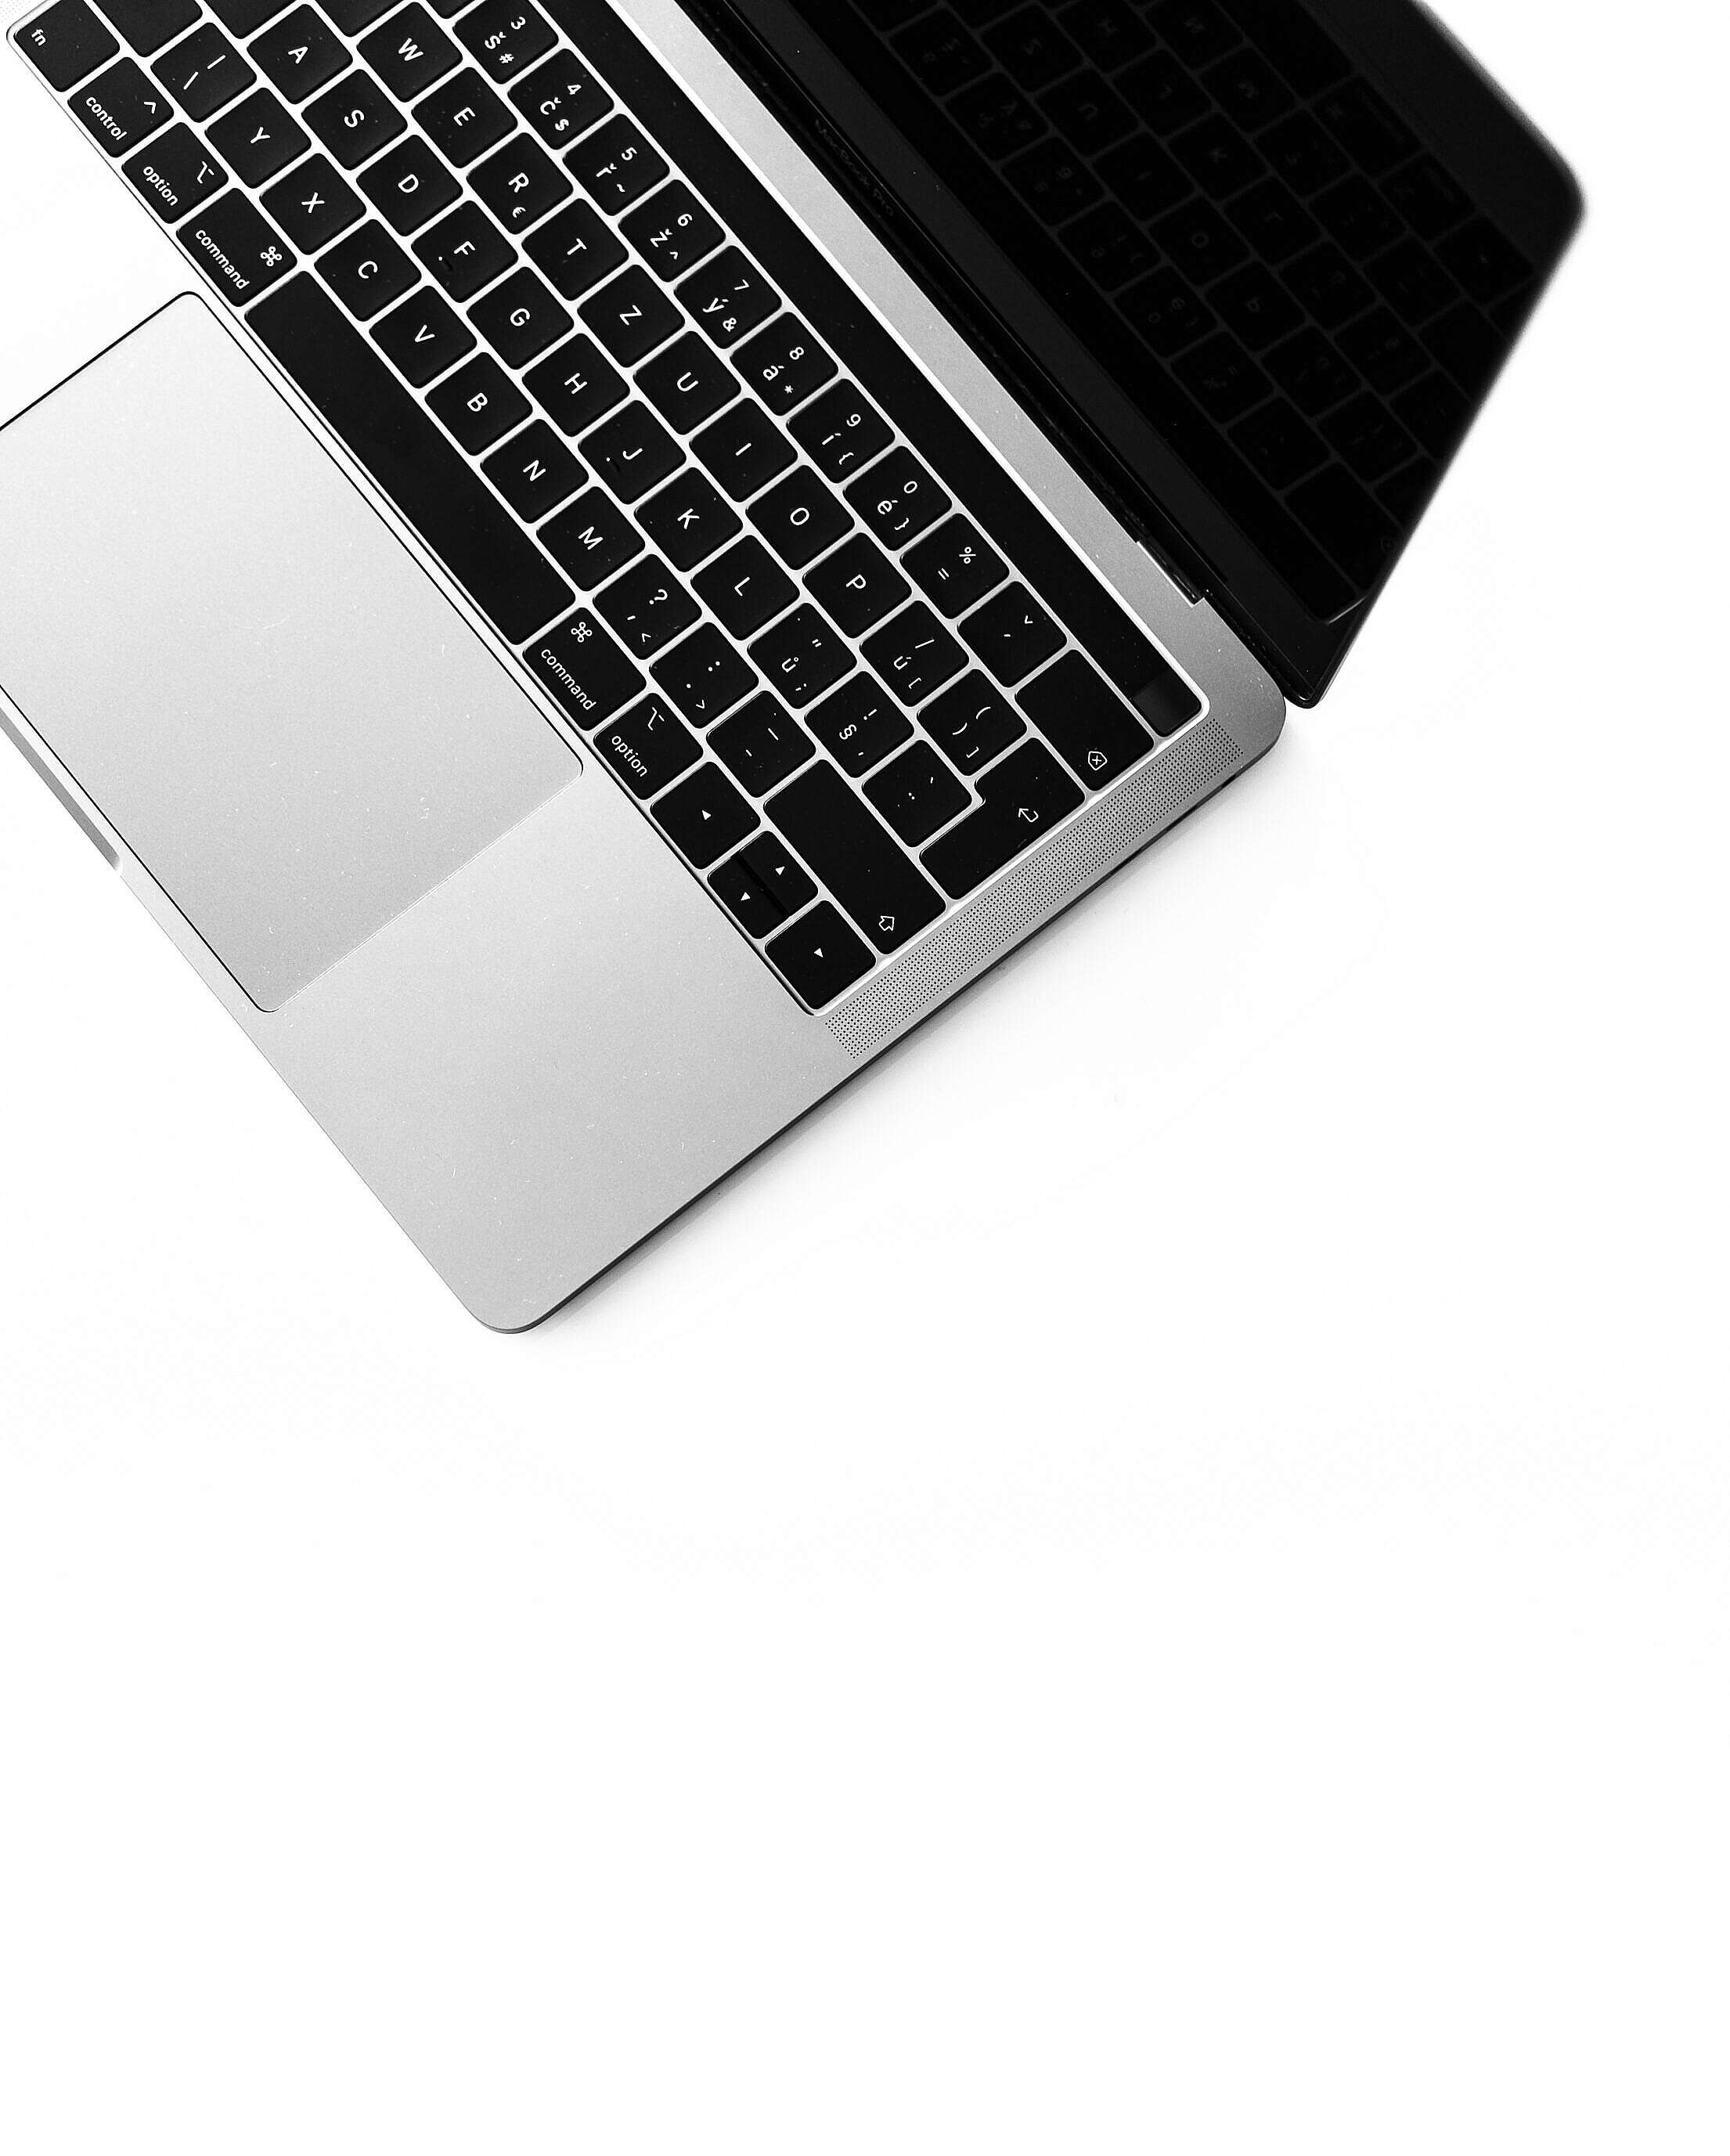 Minimalistic Laptop Keyboard Isolated Free Stock Photo